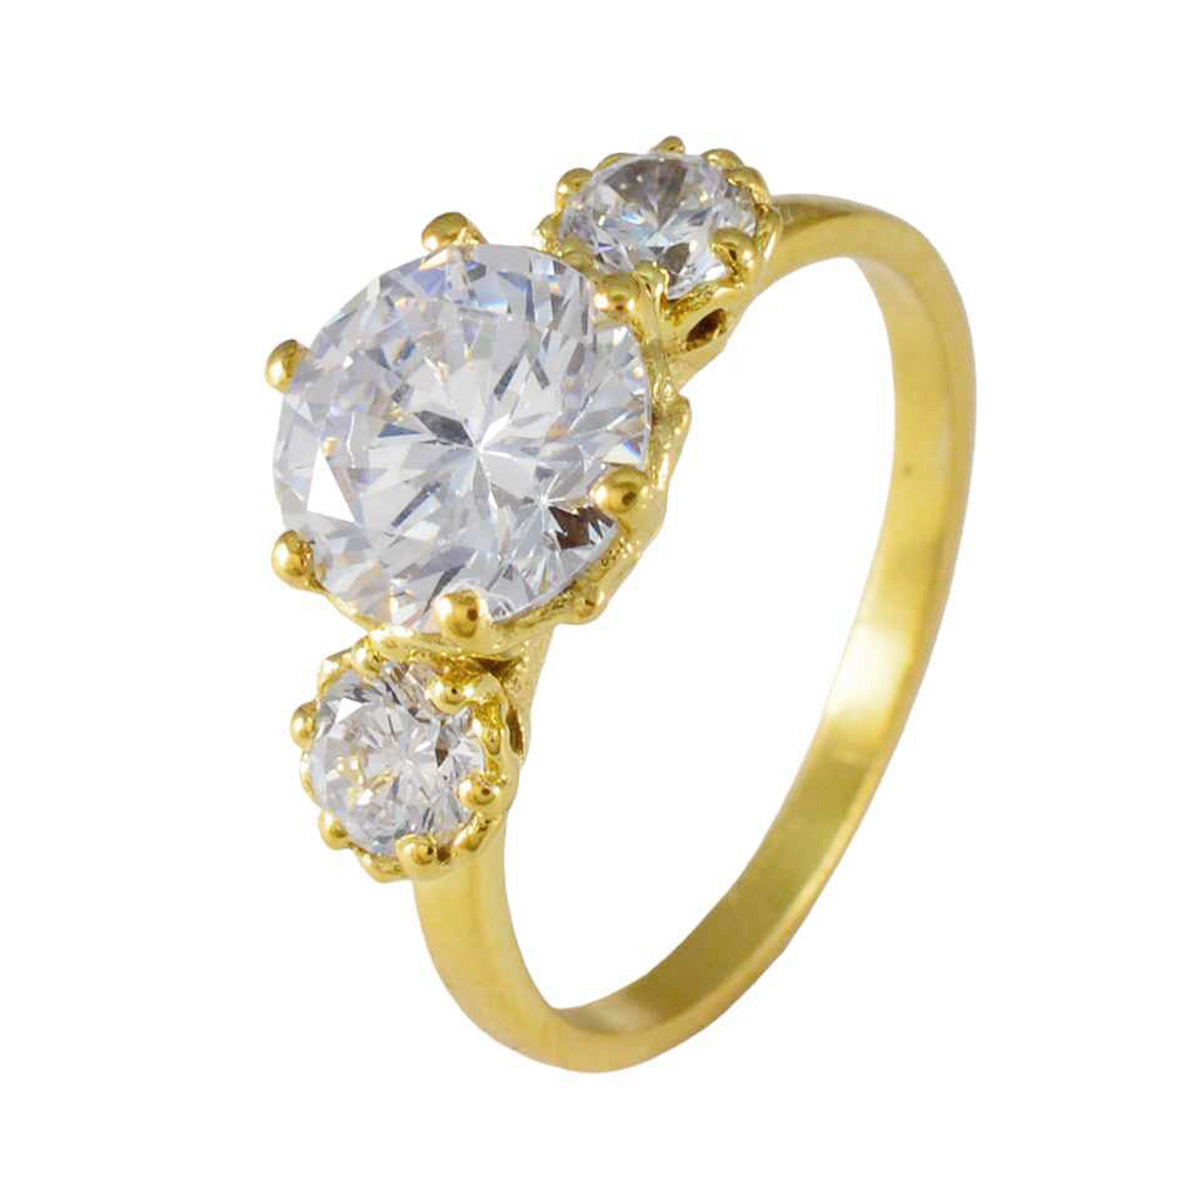 индийское серебряное кольцо riyo с покрытием из желтого золота, кольцо с зубцом круглой формы из белого камня cz